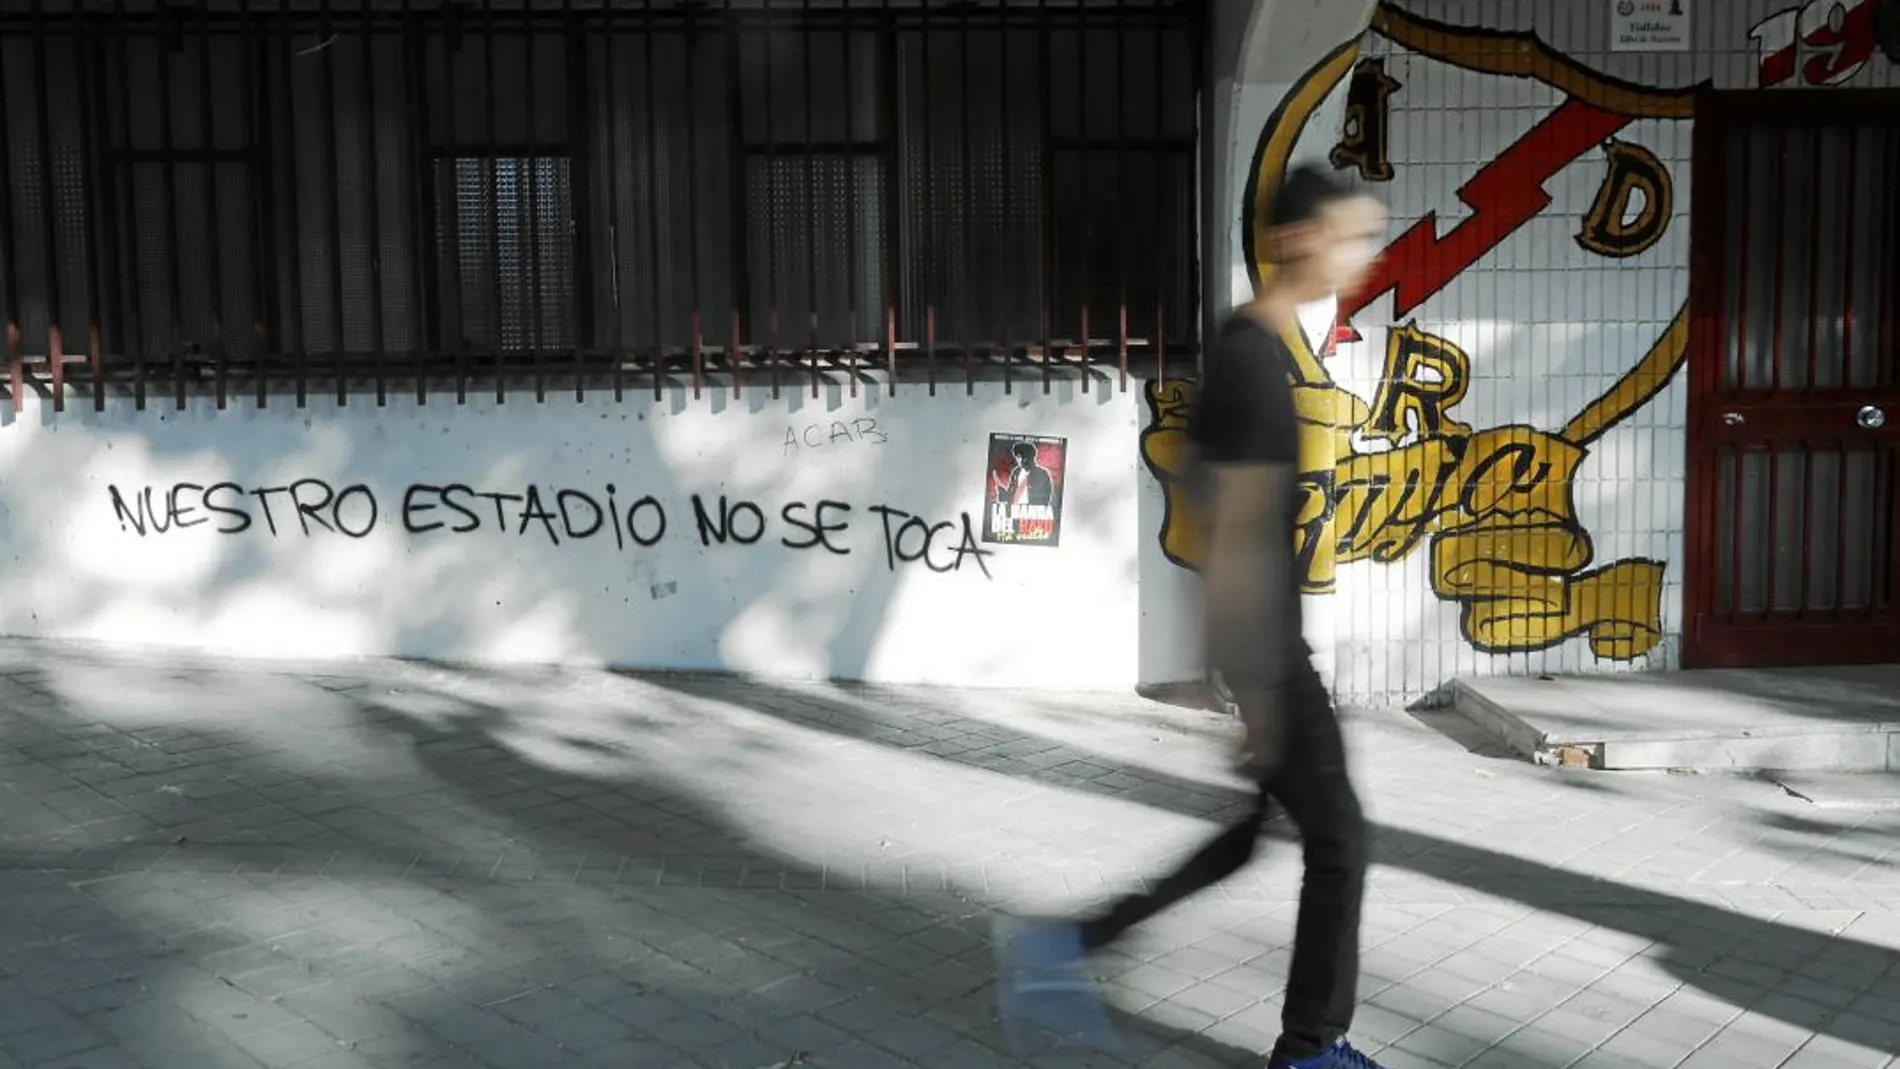 El edil de Vallecas, Paco Pérez, ha reclamado a la Comunidad que ceda la titularidad del estadio del Rayo Vallecano, en obras desde hace meses. Foto: Jesús G. Feria